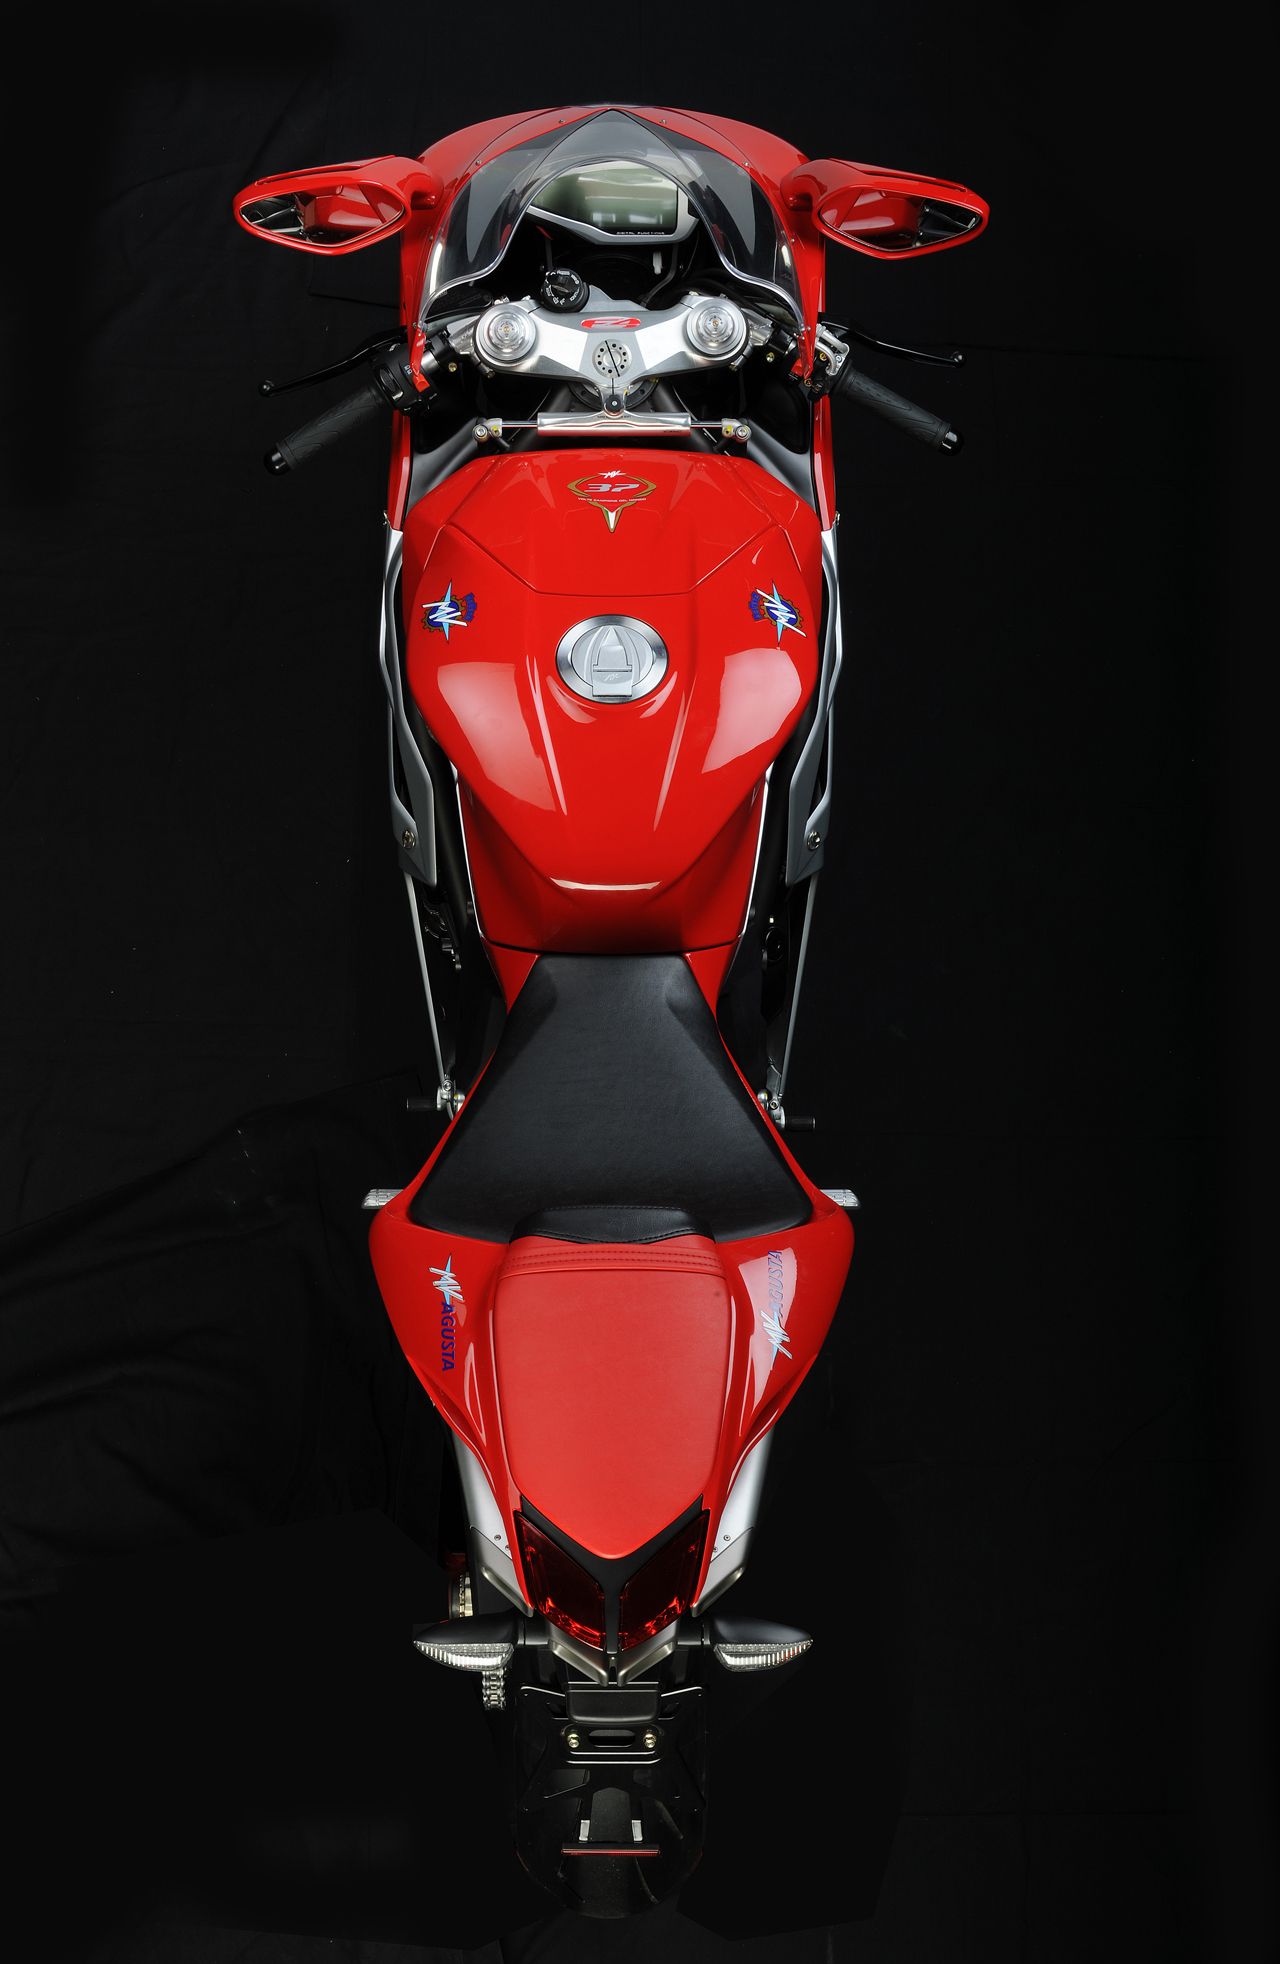  2010 MV Agusta F4